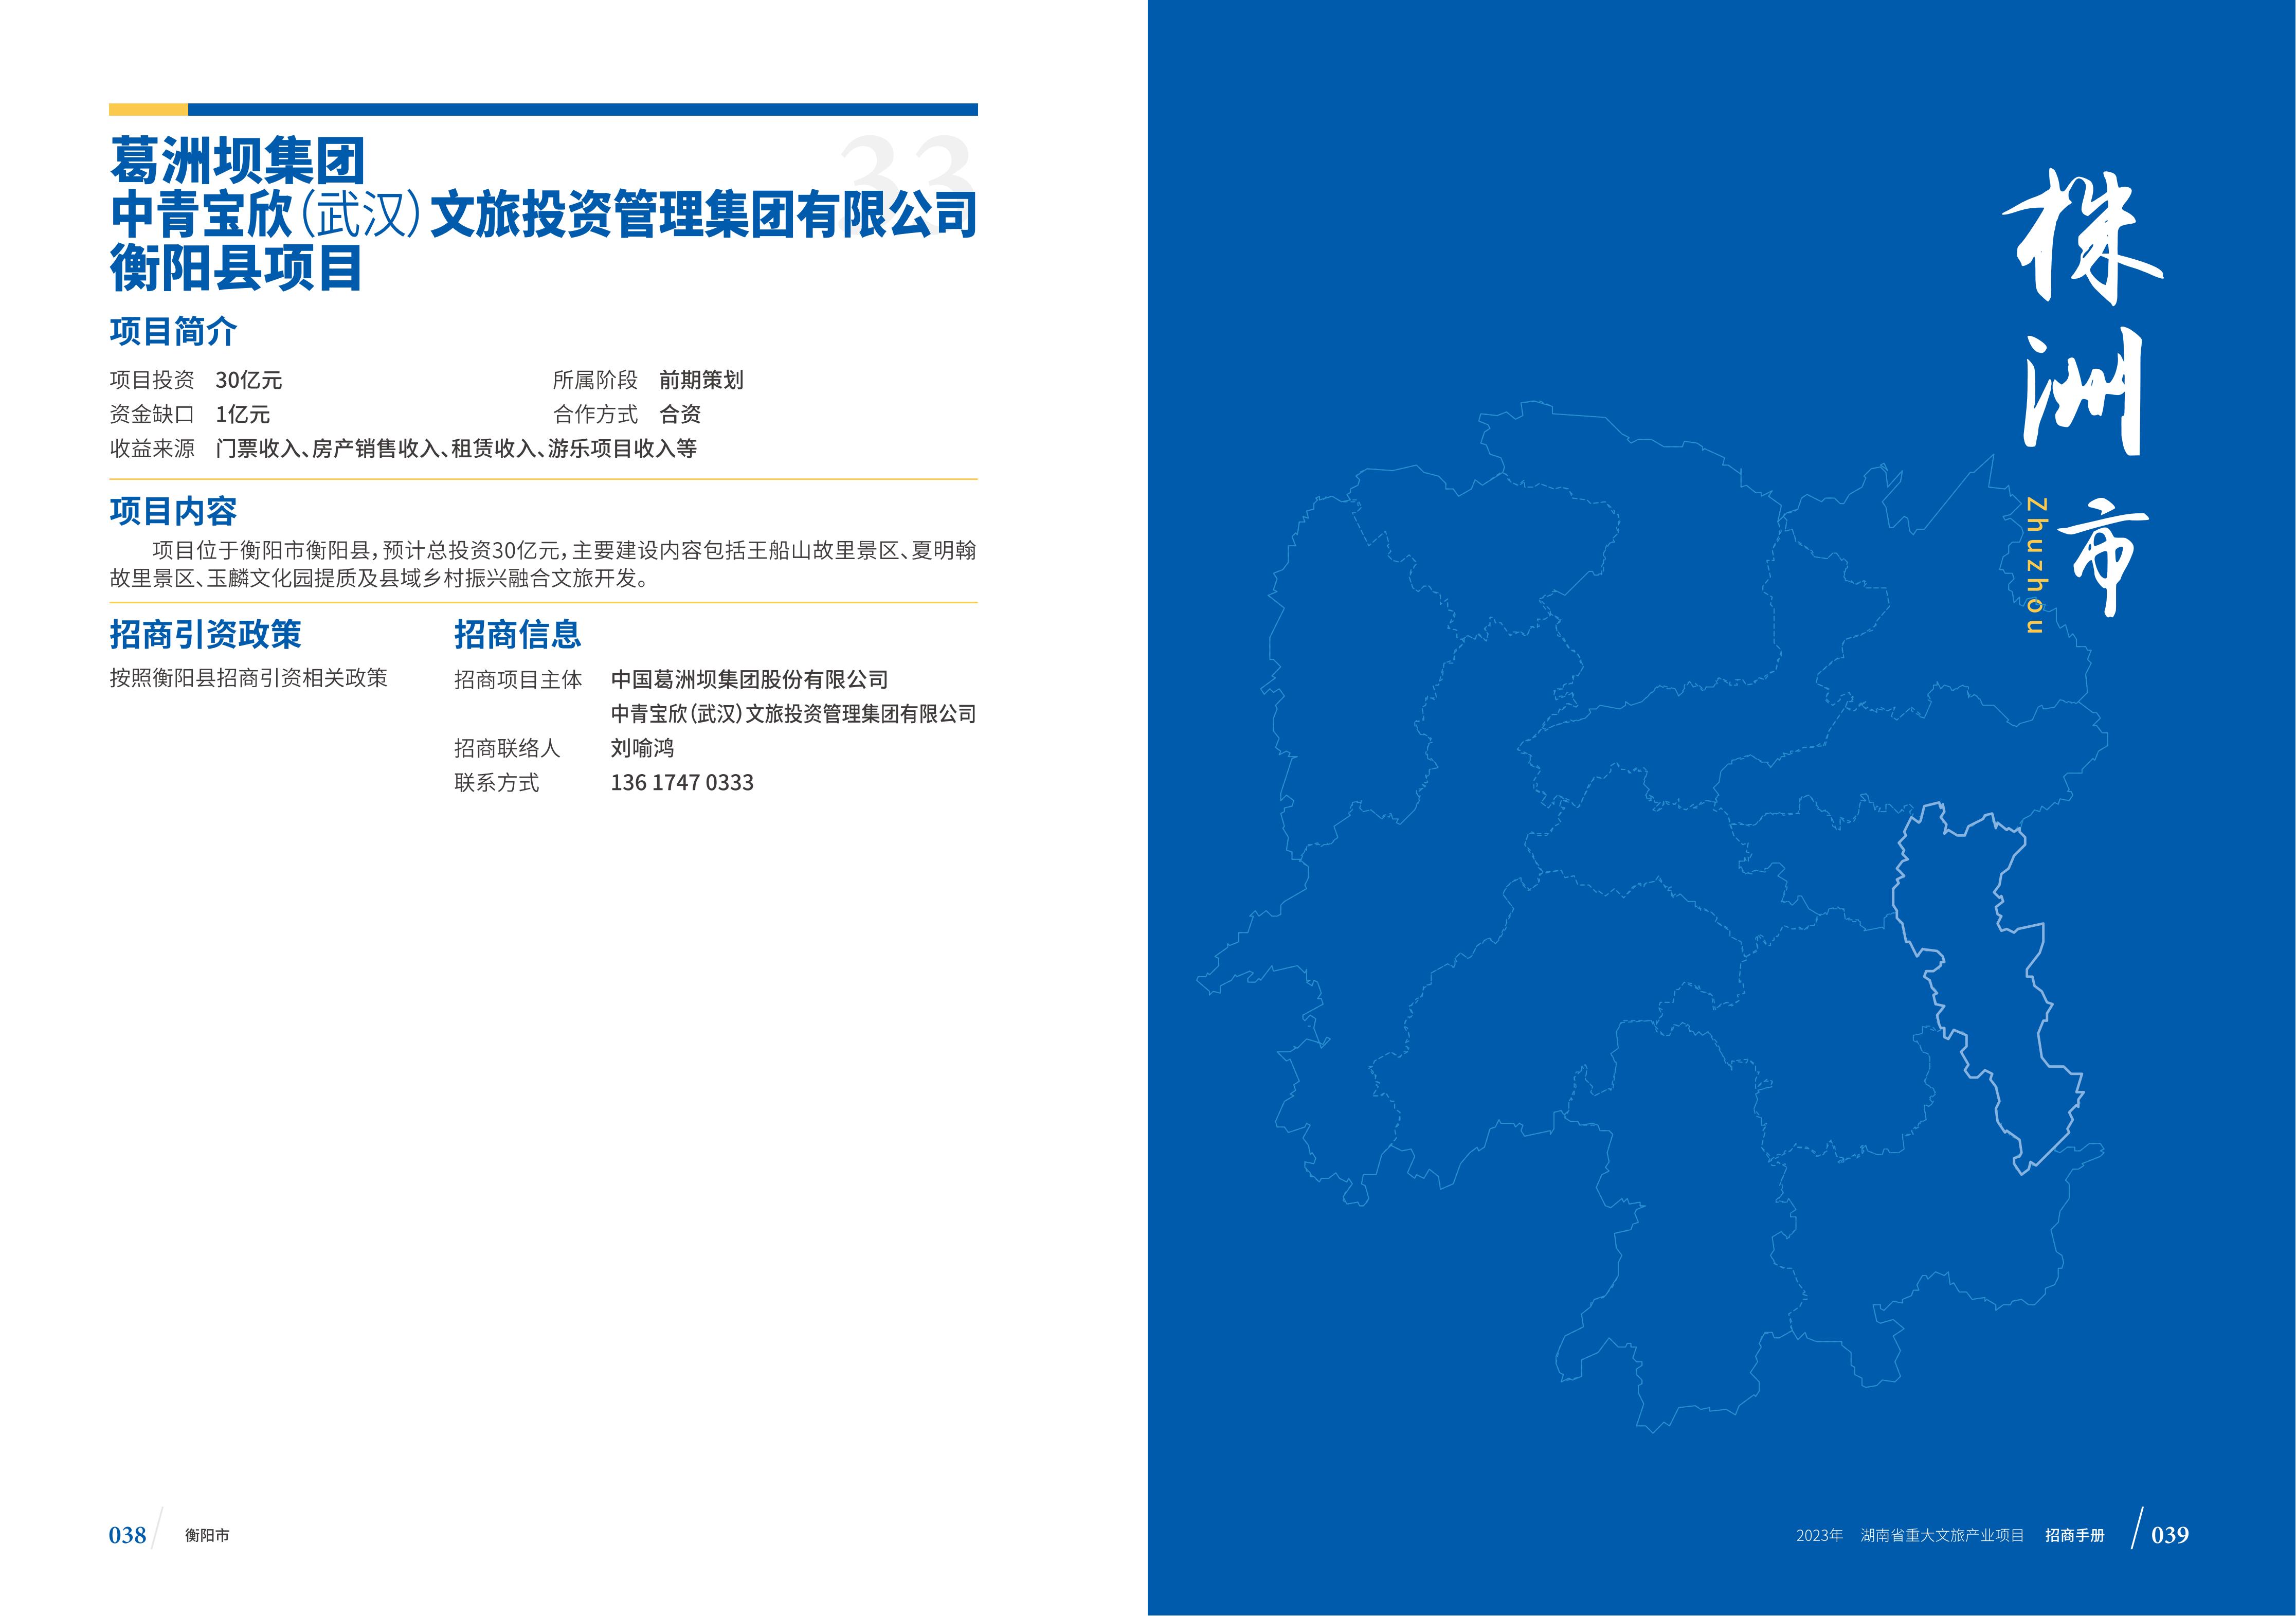 湖南省重大文旅产业项目招手册线上链接版_27.jpg